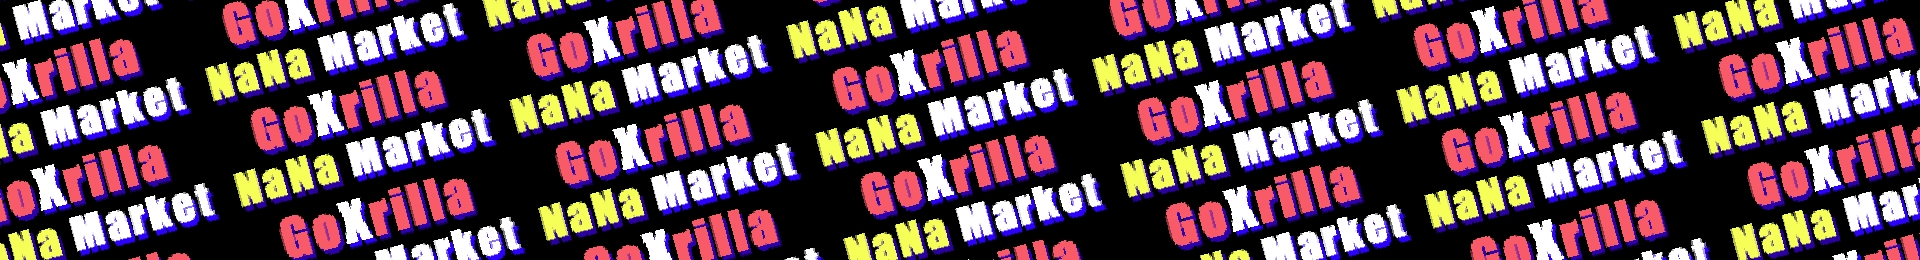 GoXrilla NaNa Market banner